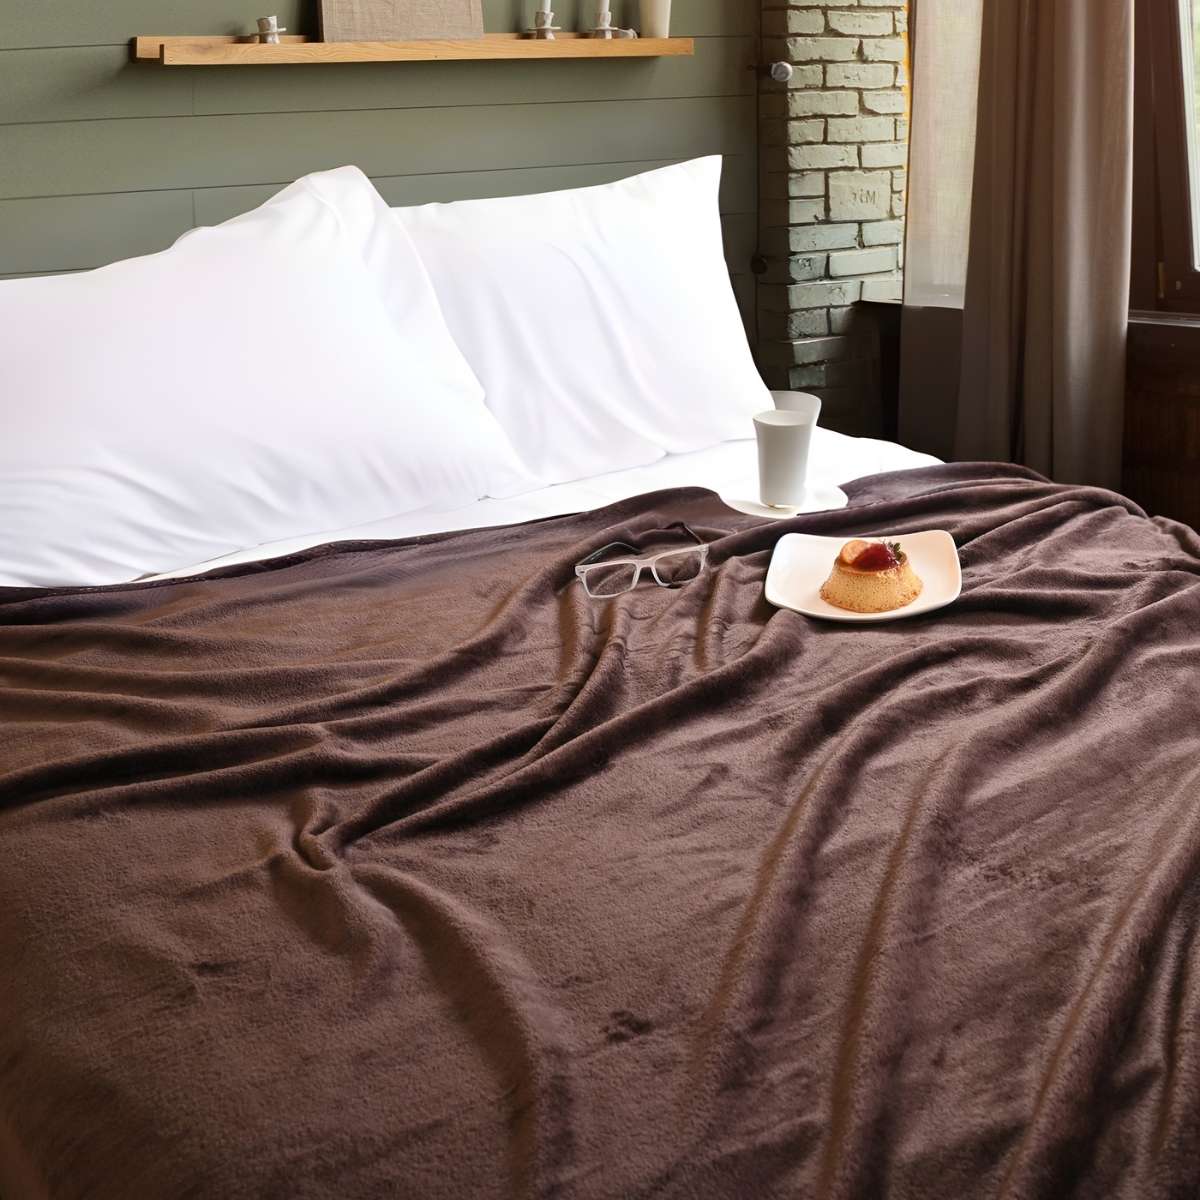 Cobija de flanel color café tamaño queen size  tendida sobre una cama